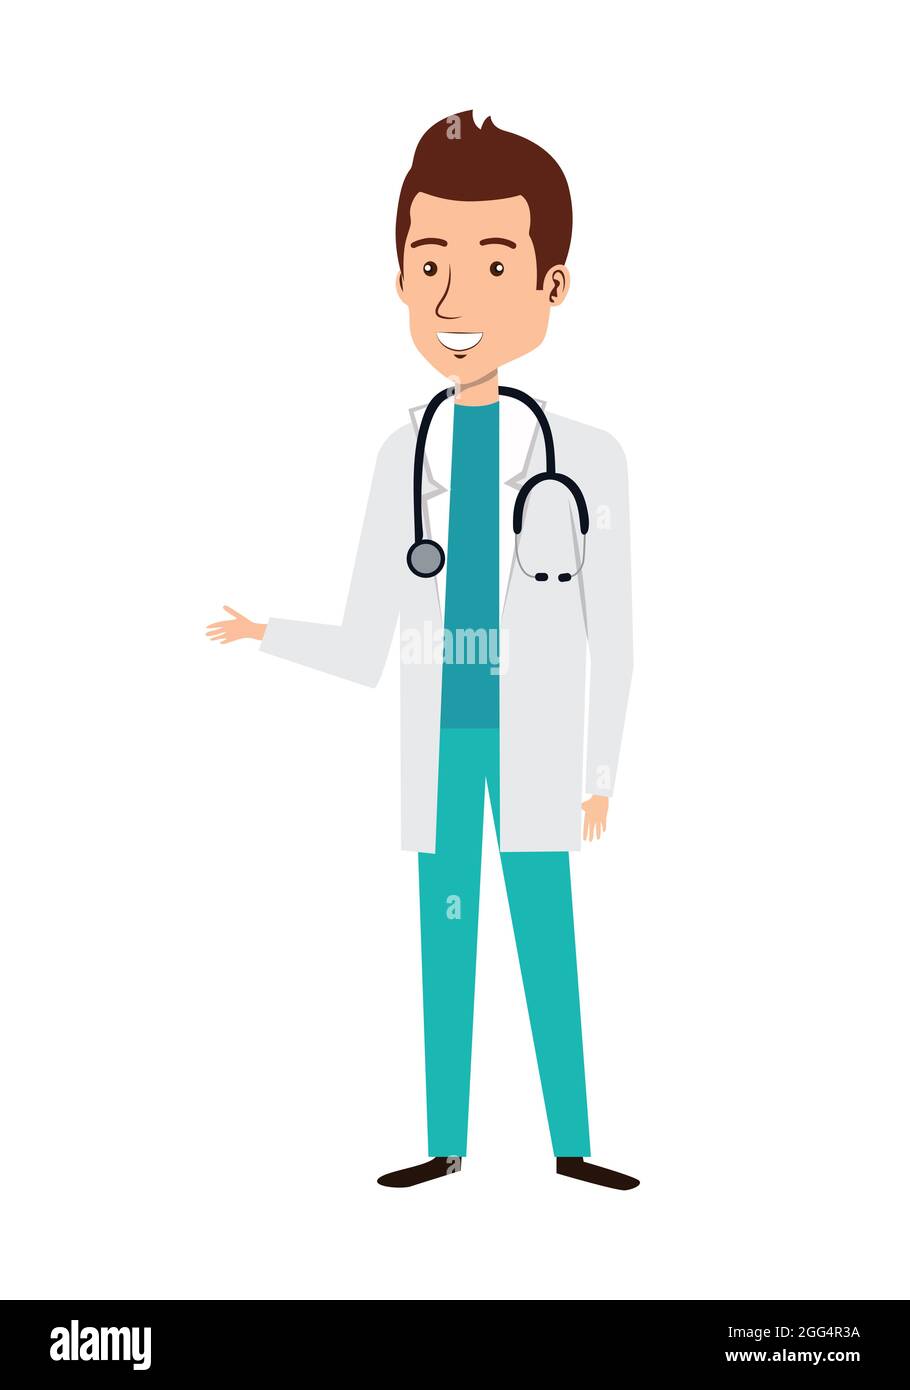 Cartoon-Figur des Arztes mit Schürze und Stethoskop. Symbol „Arzt gibt Vorschläge“. Medizinische Beratung und Unterstützung. Stock Vektor